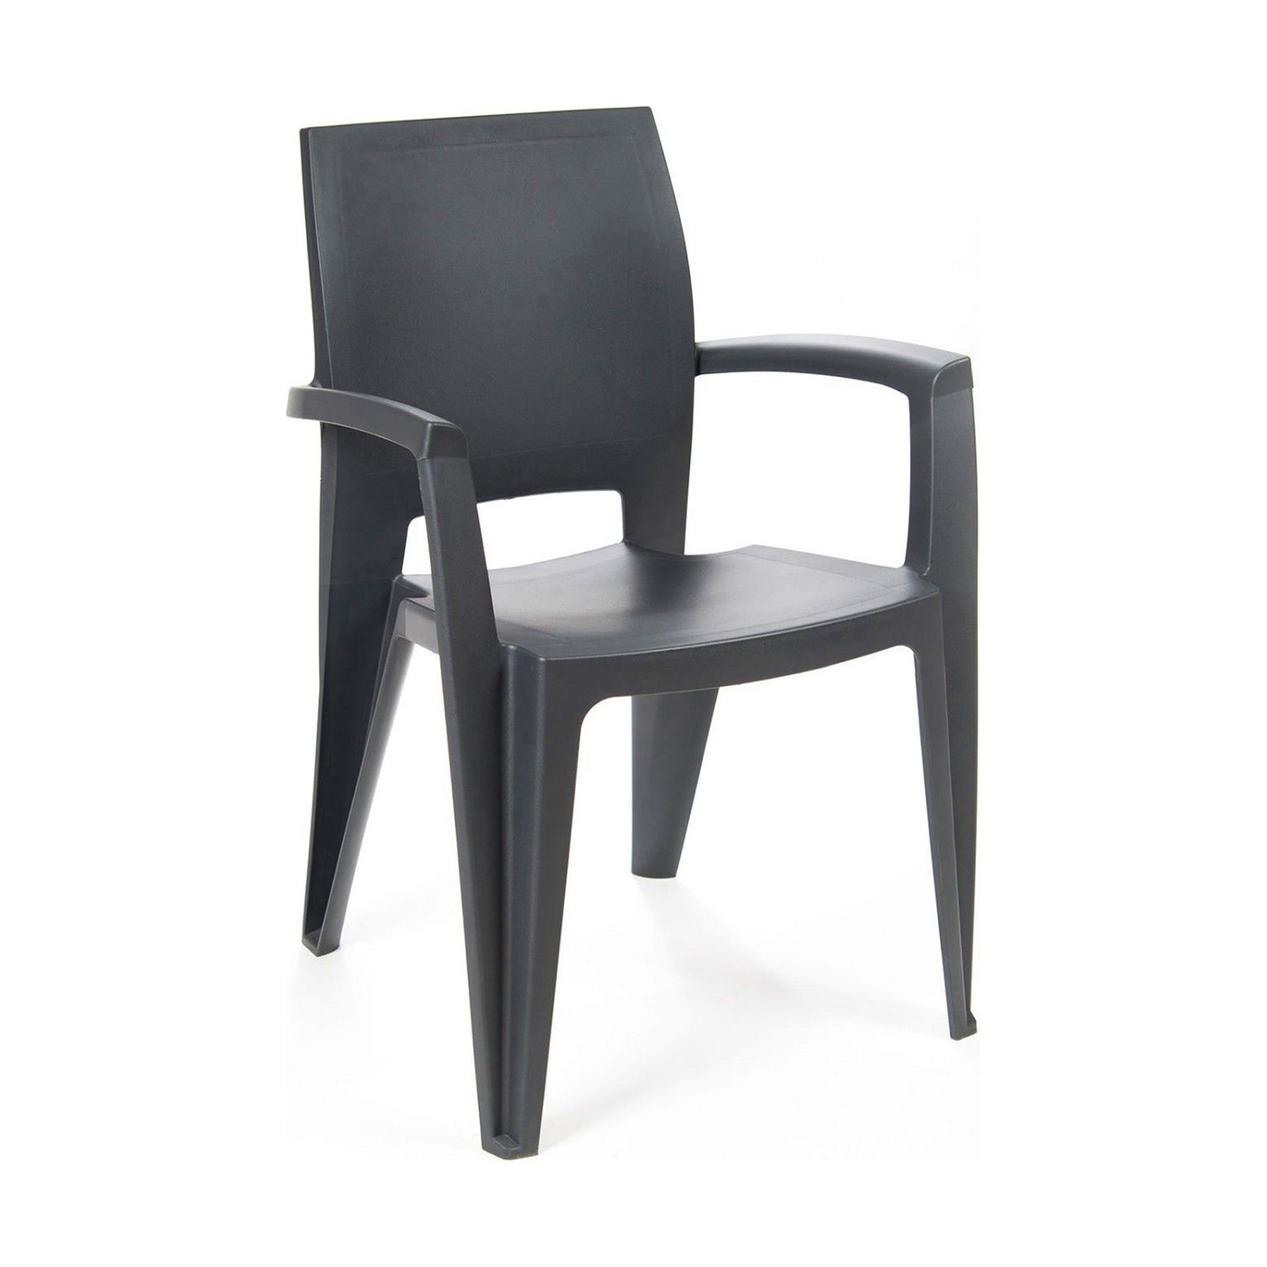 Oferta de Cadeira Elegance Lisa com Braços Resina por 13,99€ em OvarMat